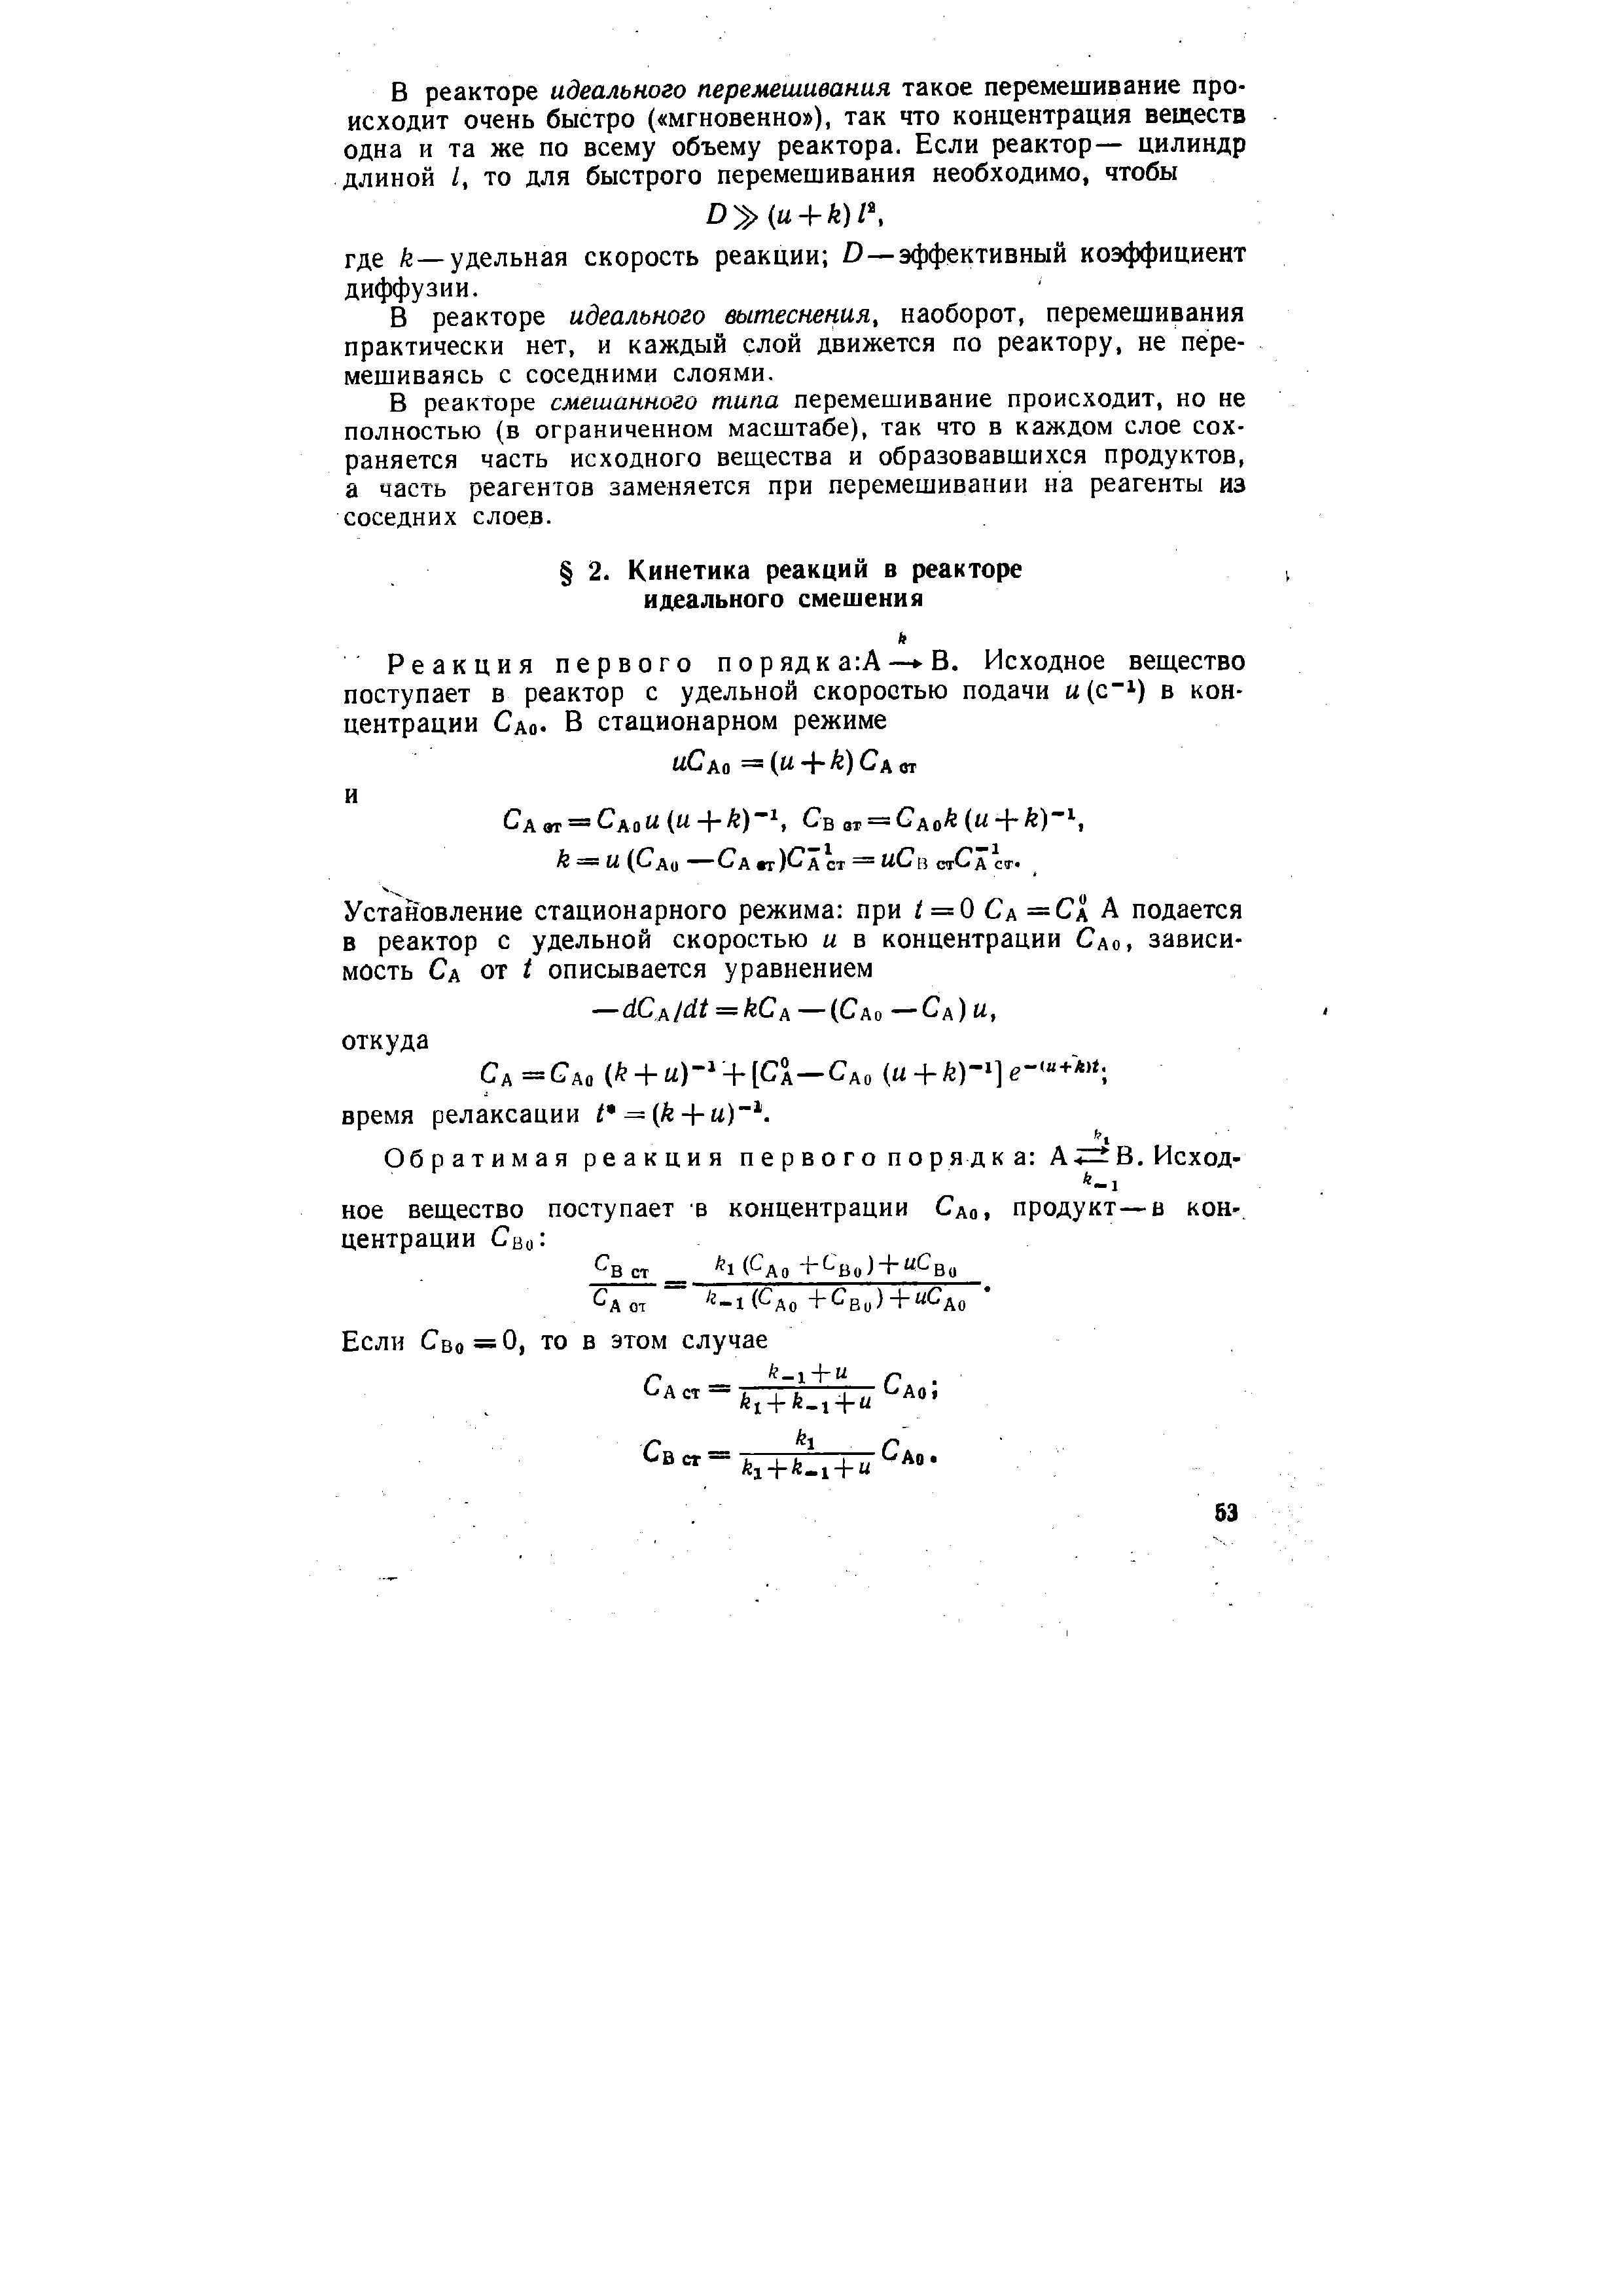 Сд=Сдо ( + и)- + [Сд—Сдо (м + А )-Че- + время релаксации i = (fe-fM) .